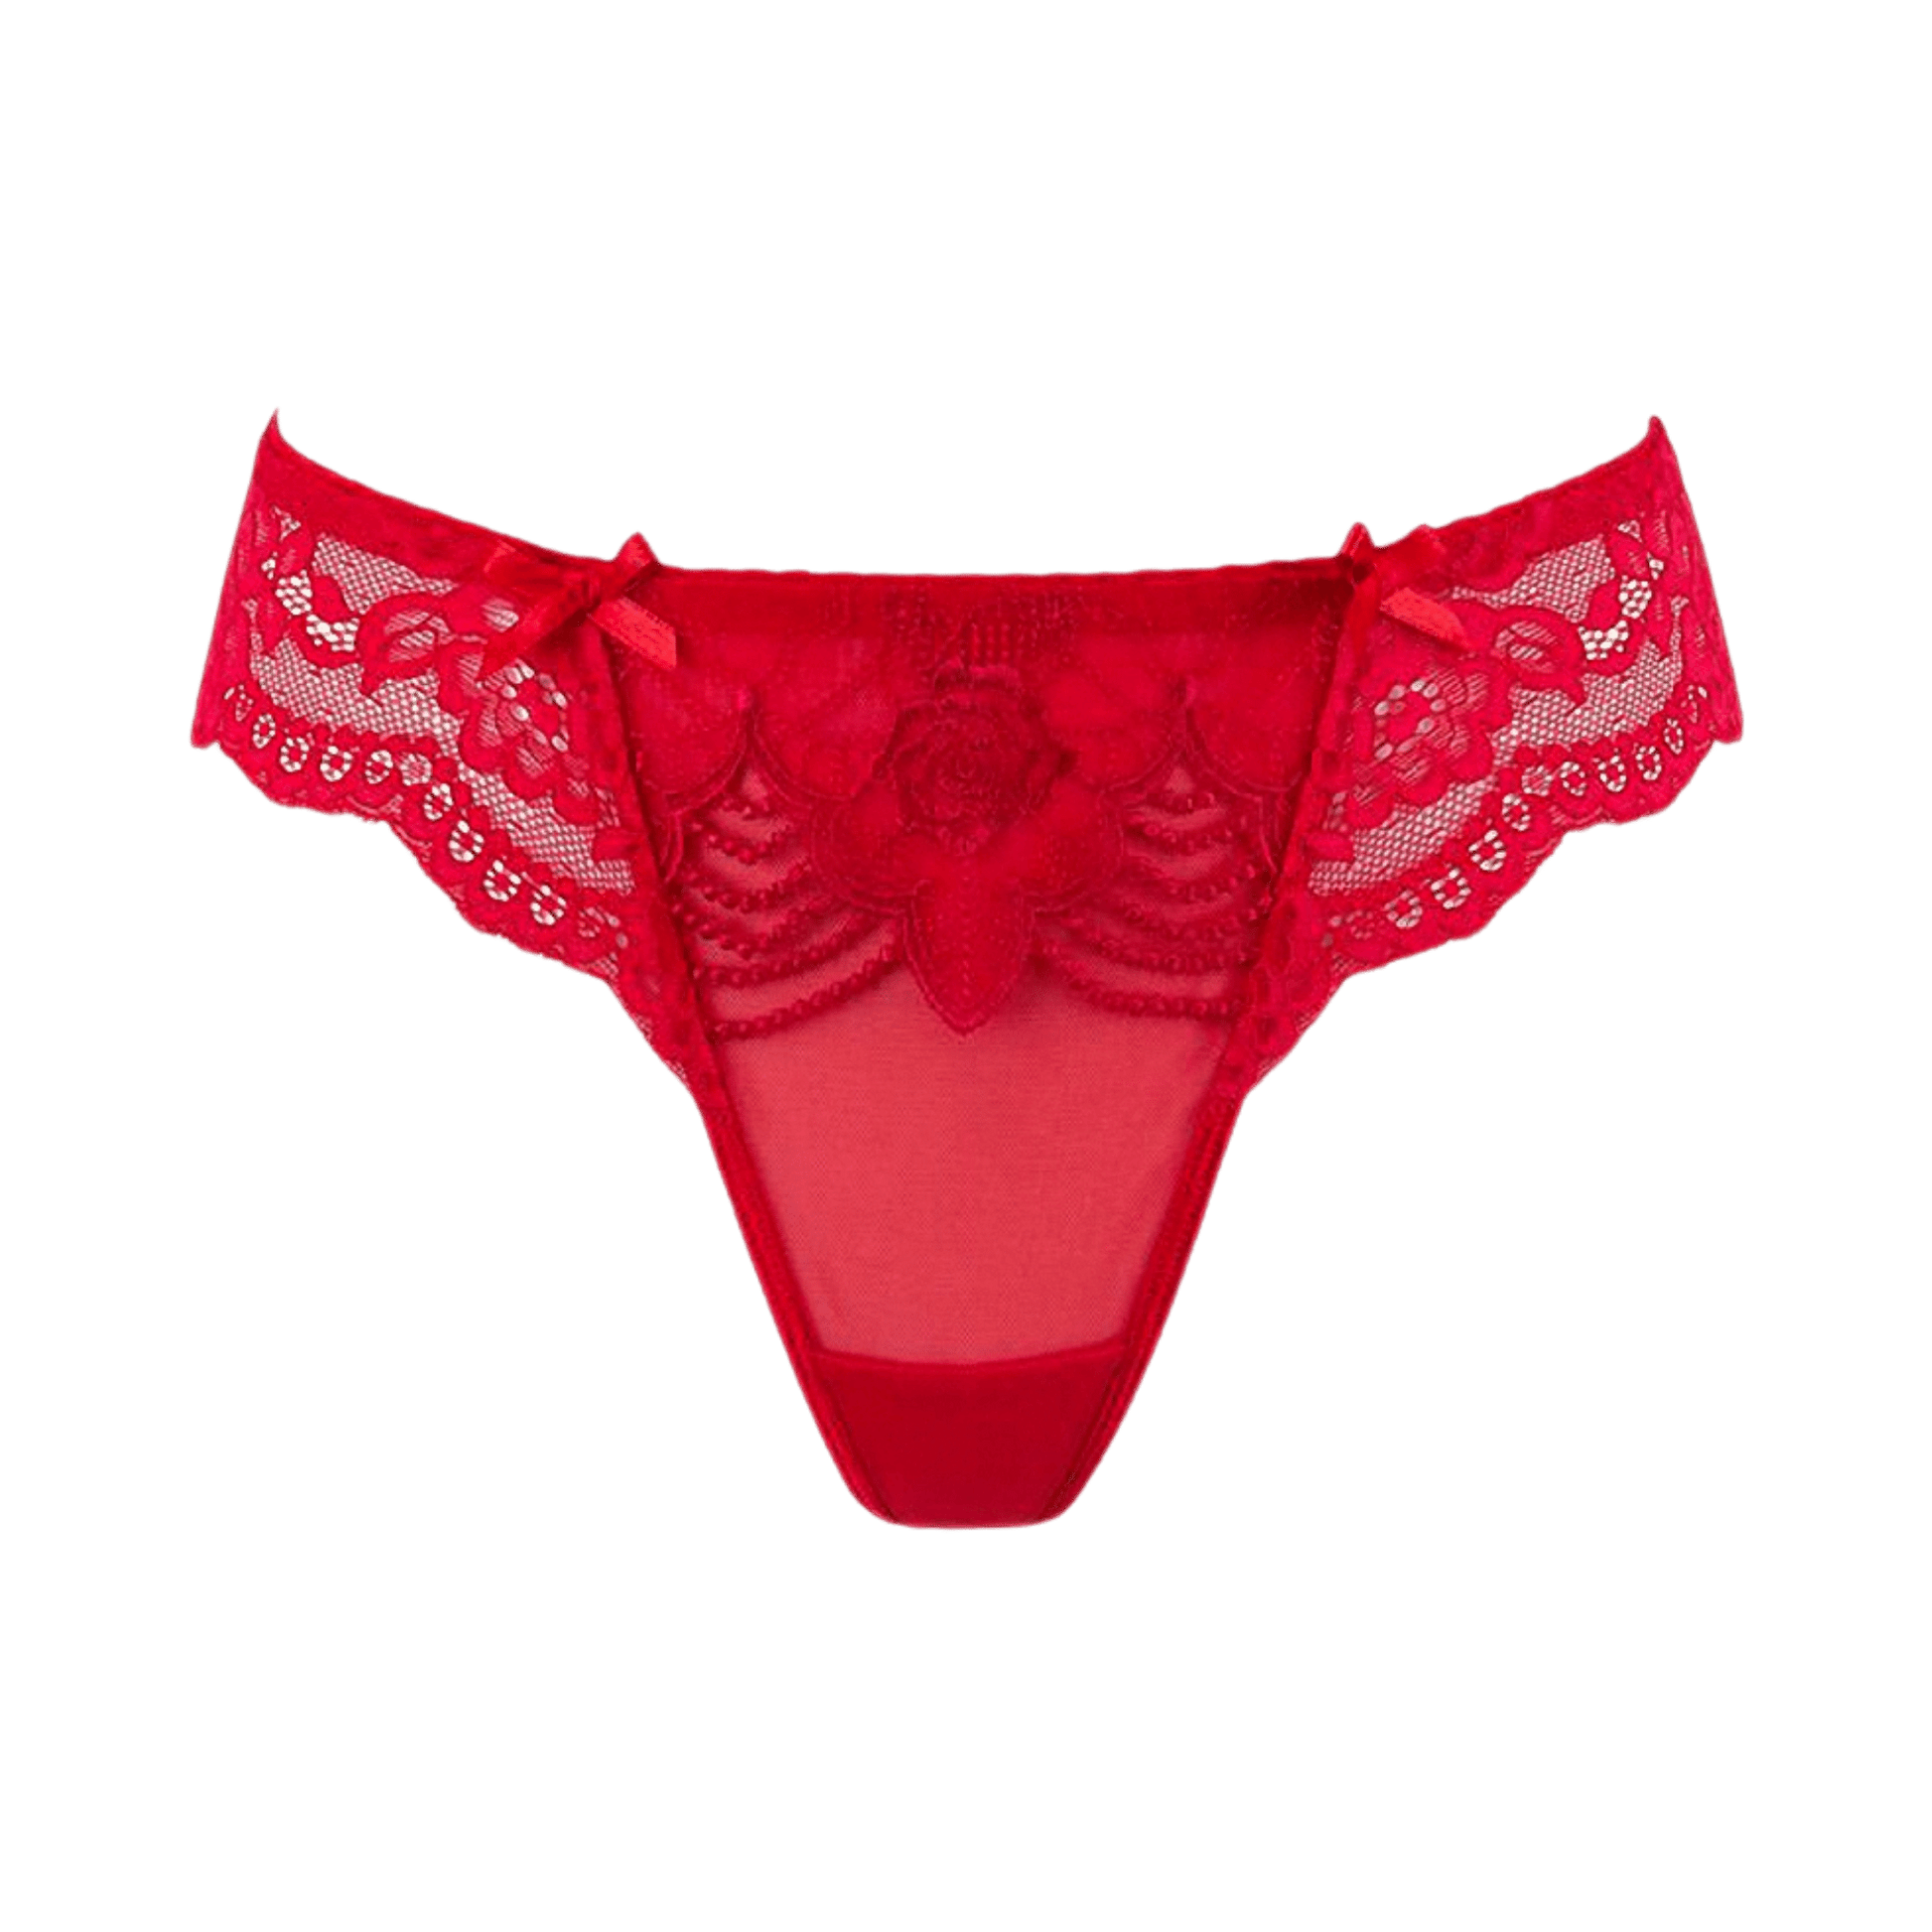 String brésilien rouge V-9698 de Axami chez Oh My God'Z avec détails en dentelle luxueuse, parfait pour ajouter une touche d'élégance et de séduction à votre garde-robe intime.